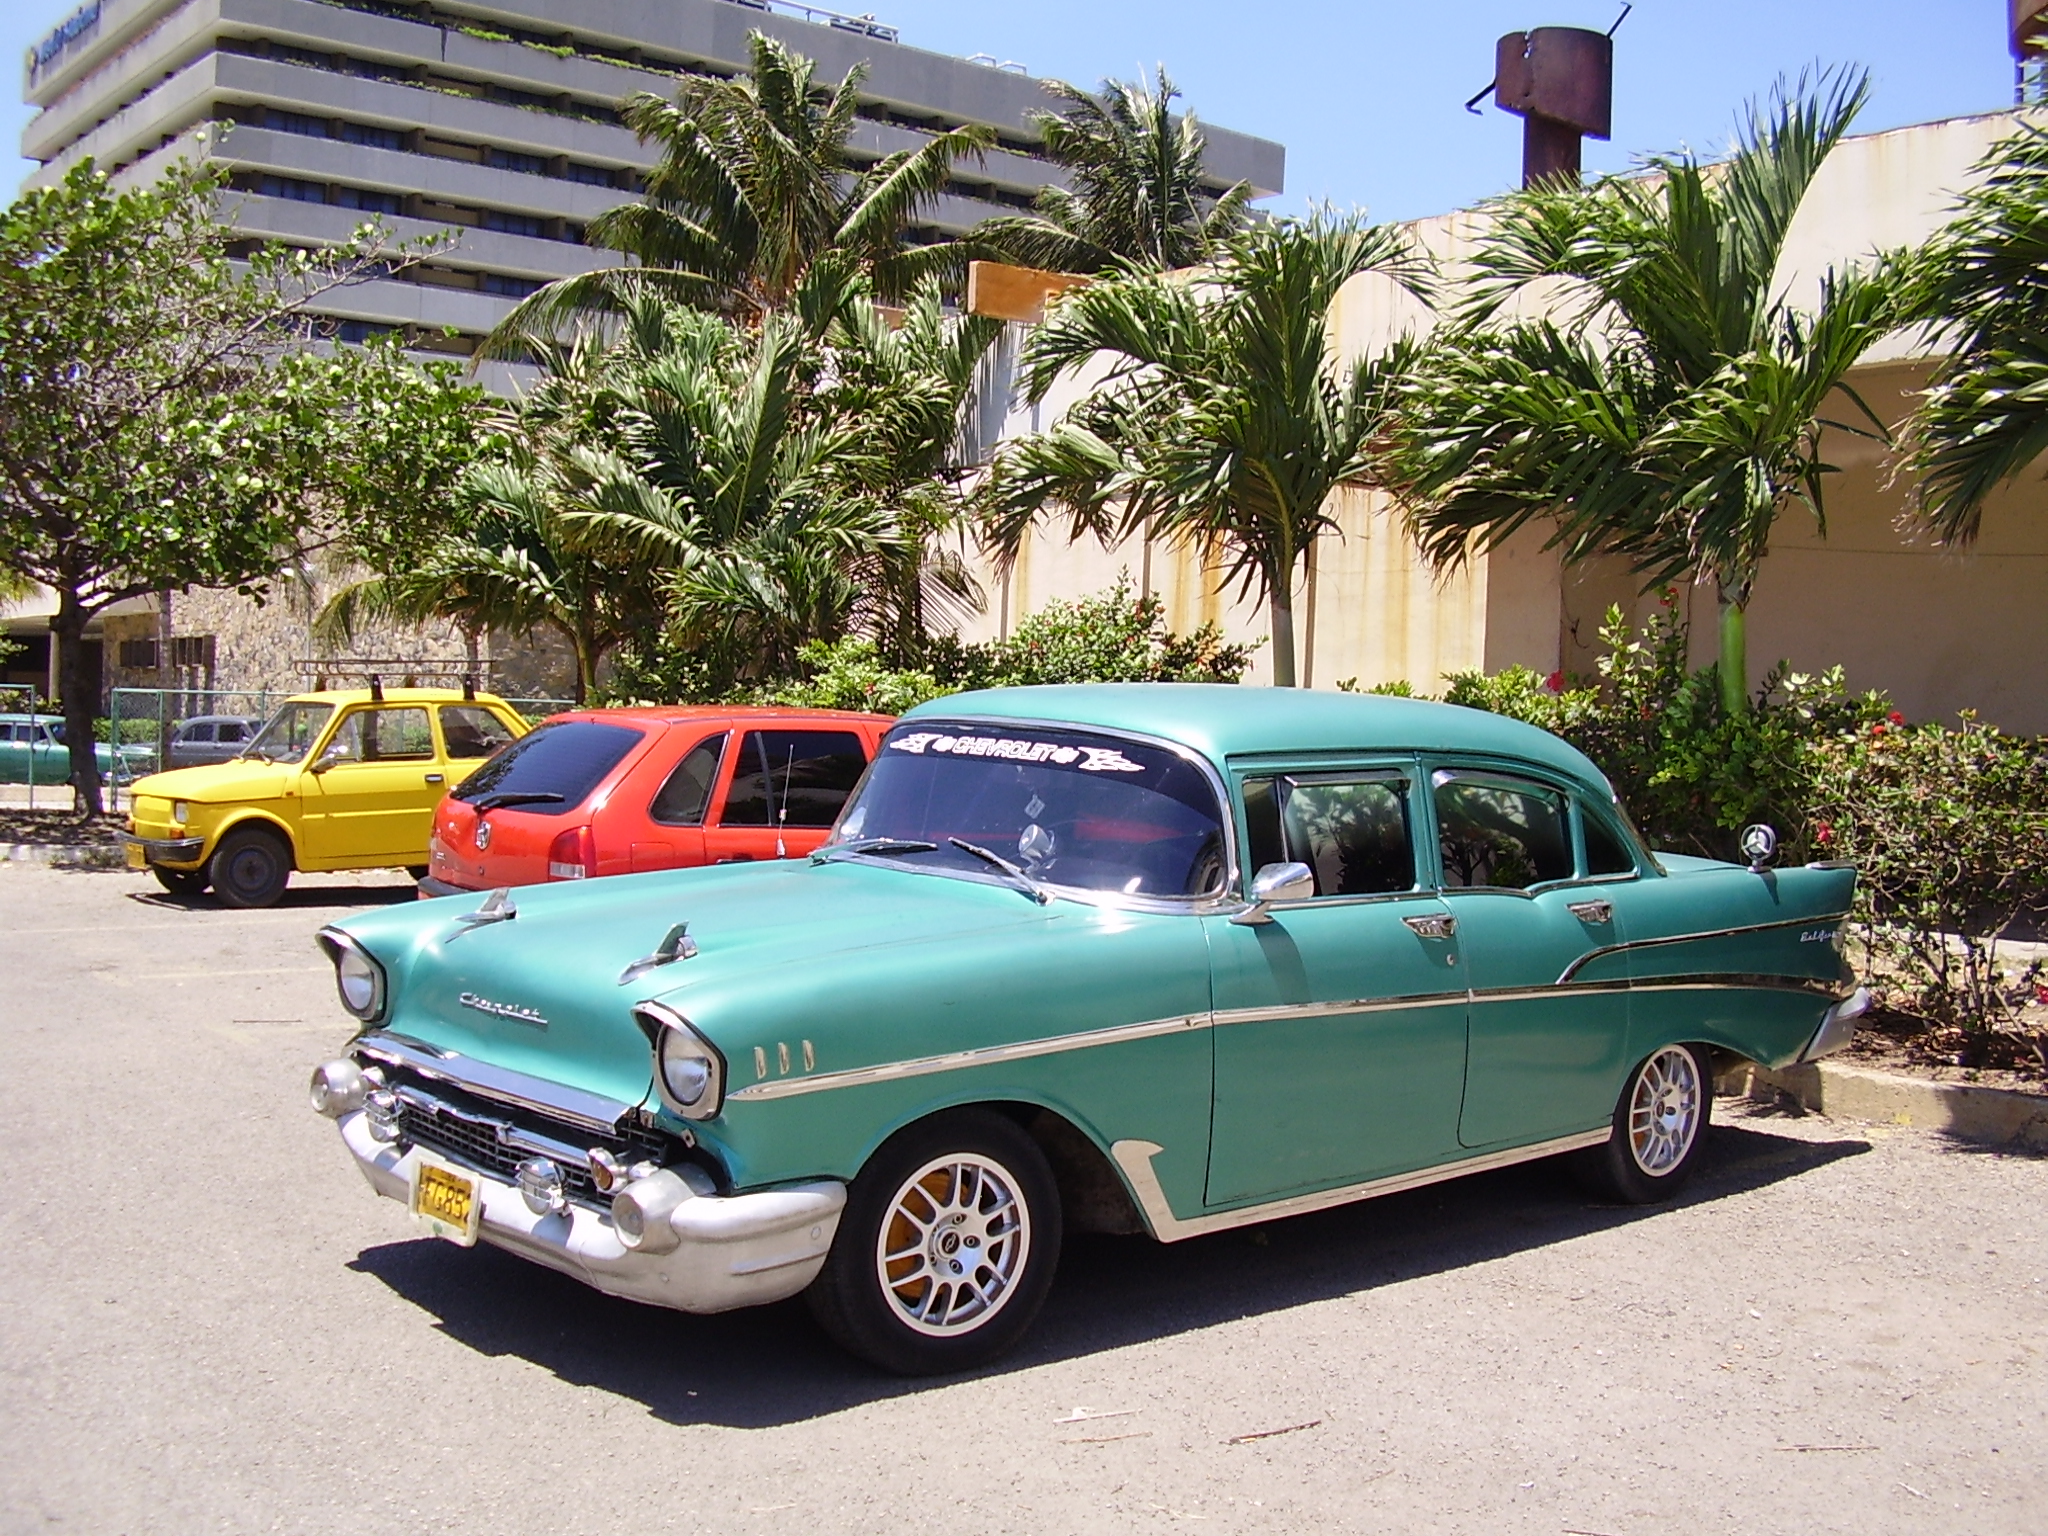 Кубинские названия. Шевроле на Кубе. Куба ретромобили Гавана. Ретро автомобили Кубы. Ретро авто на Кубе.